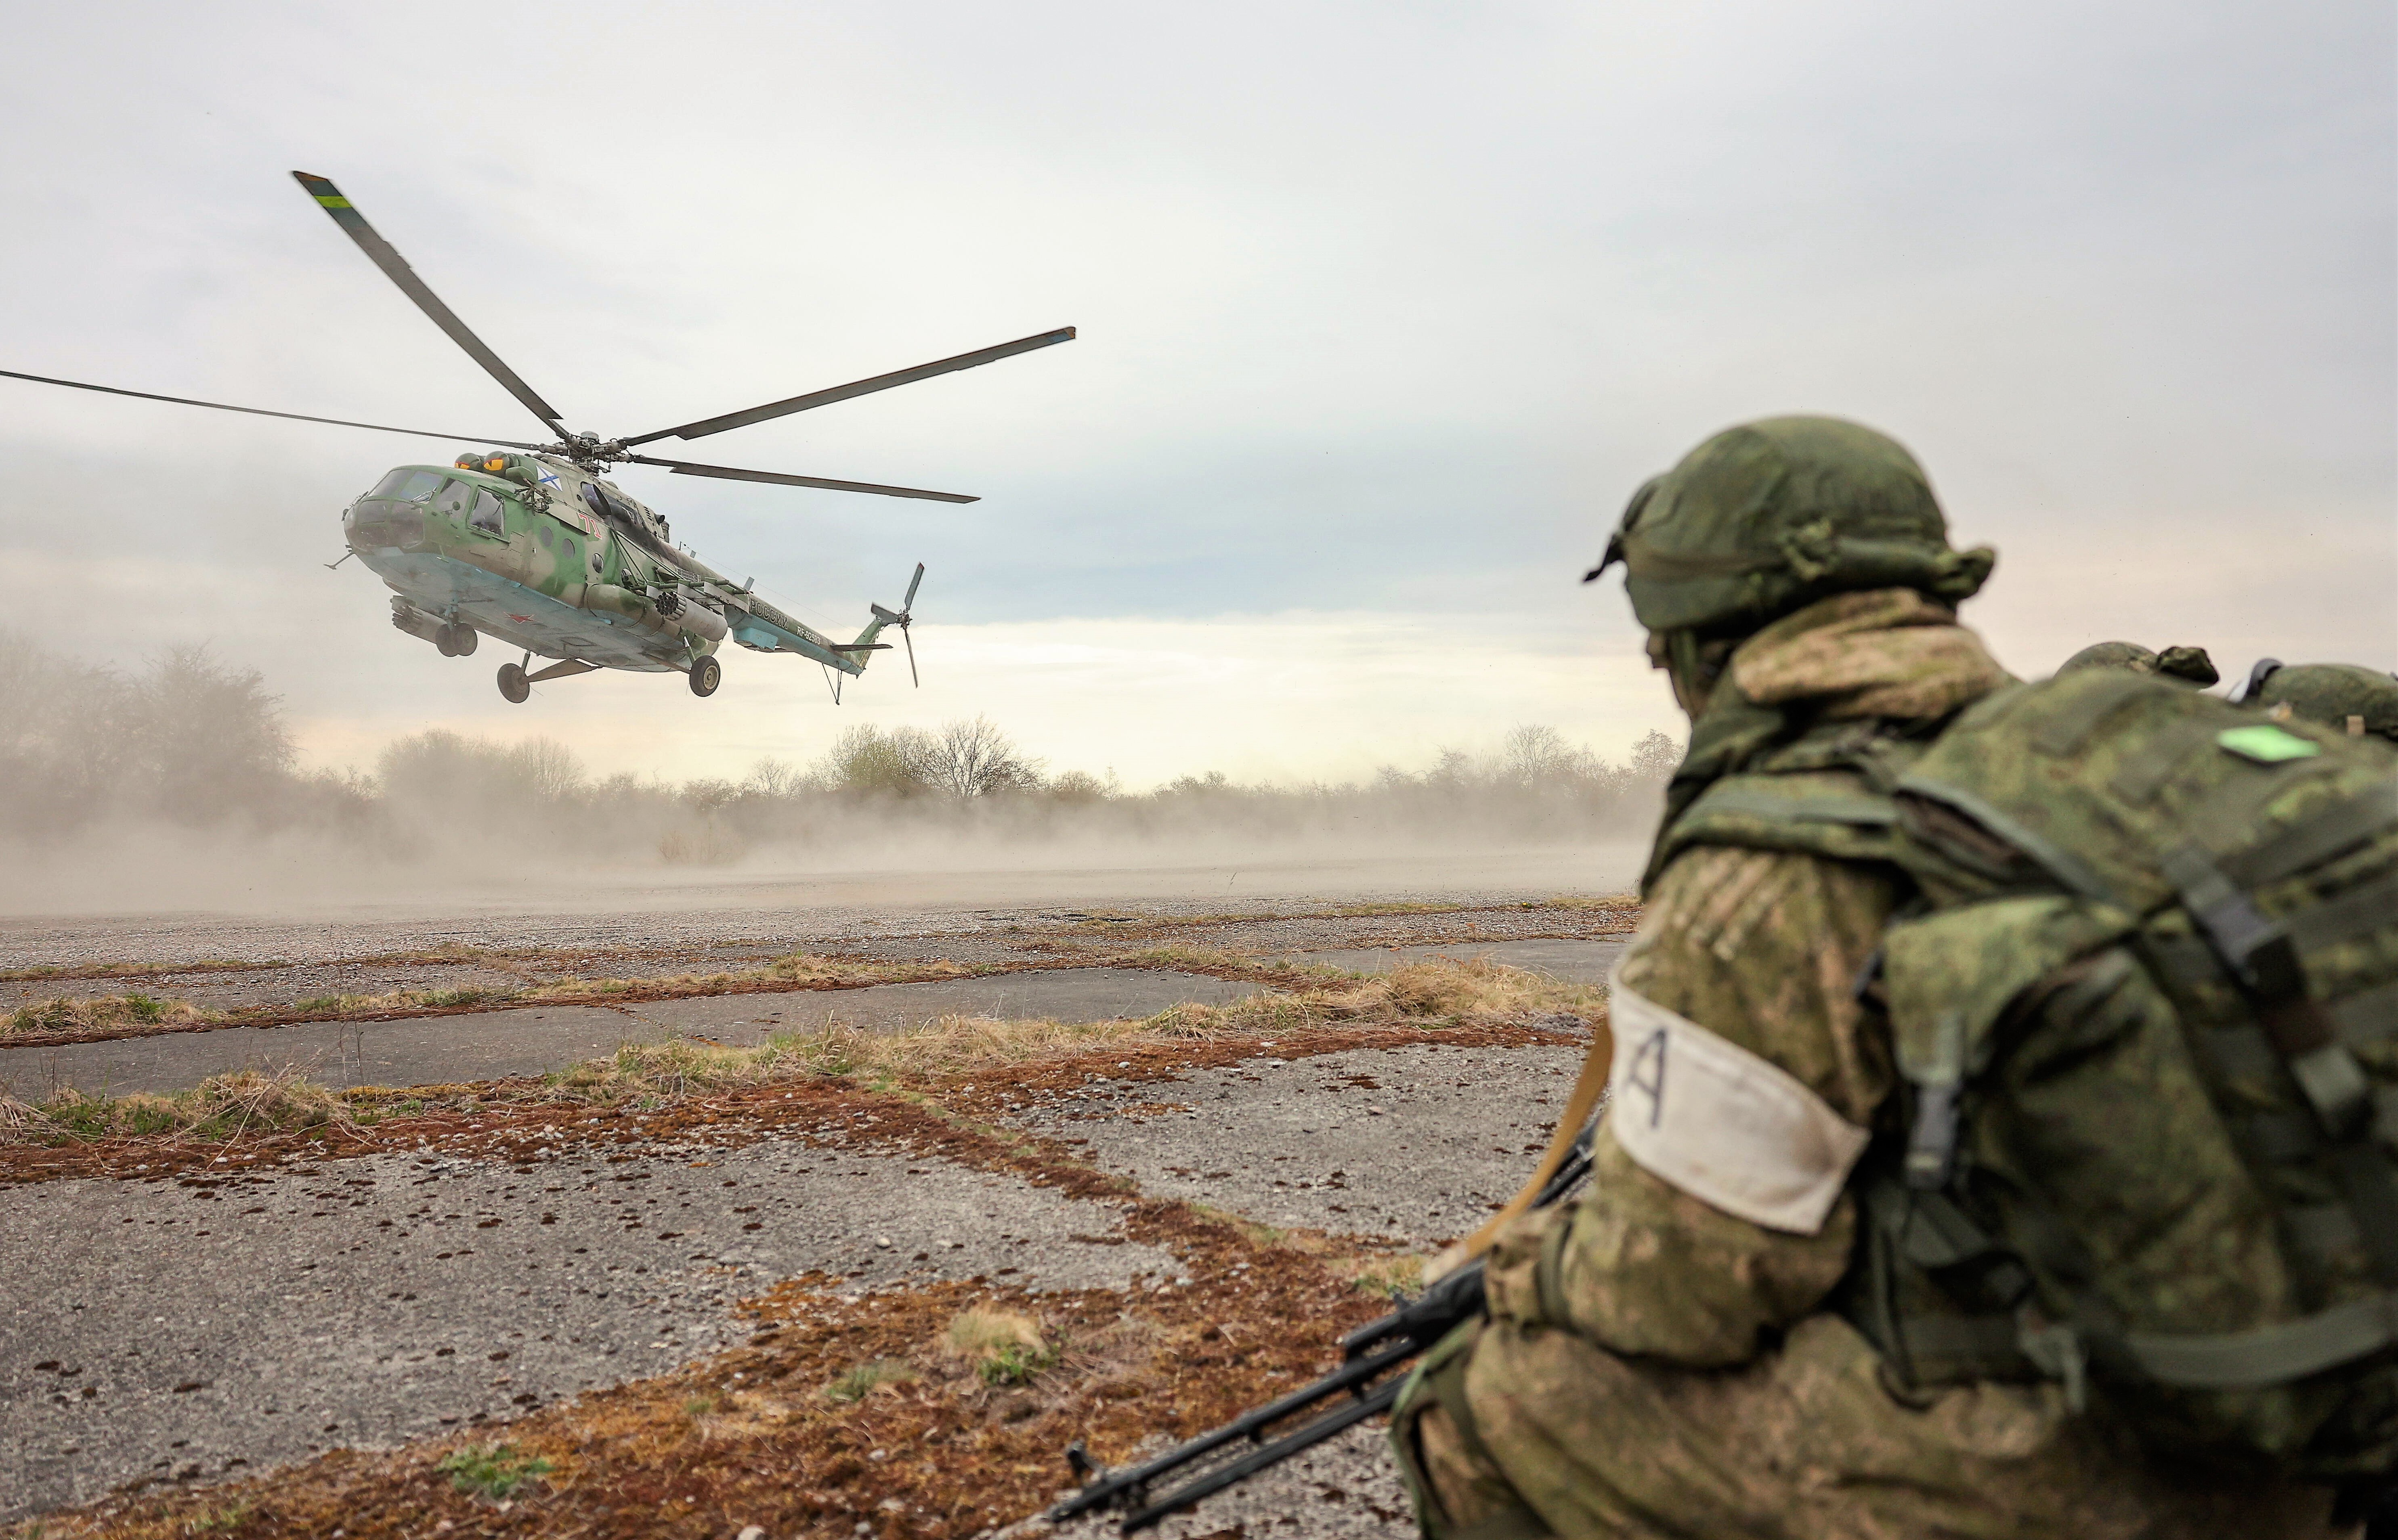 Evakuierung! Ukraine muss Frontstadt evakuieren, die Russen rücken vor - Droht eine neue Wende im Donbass?